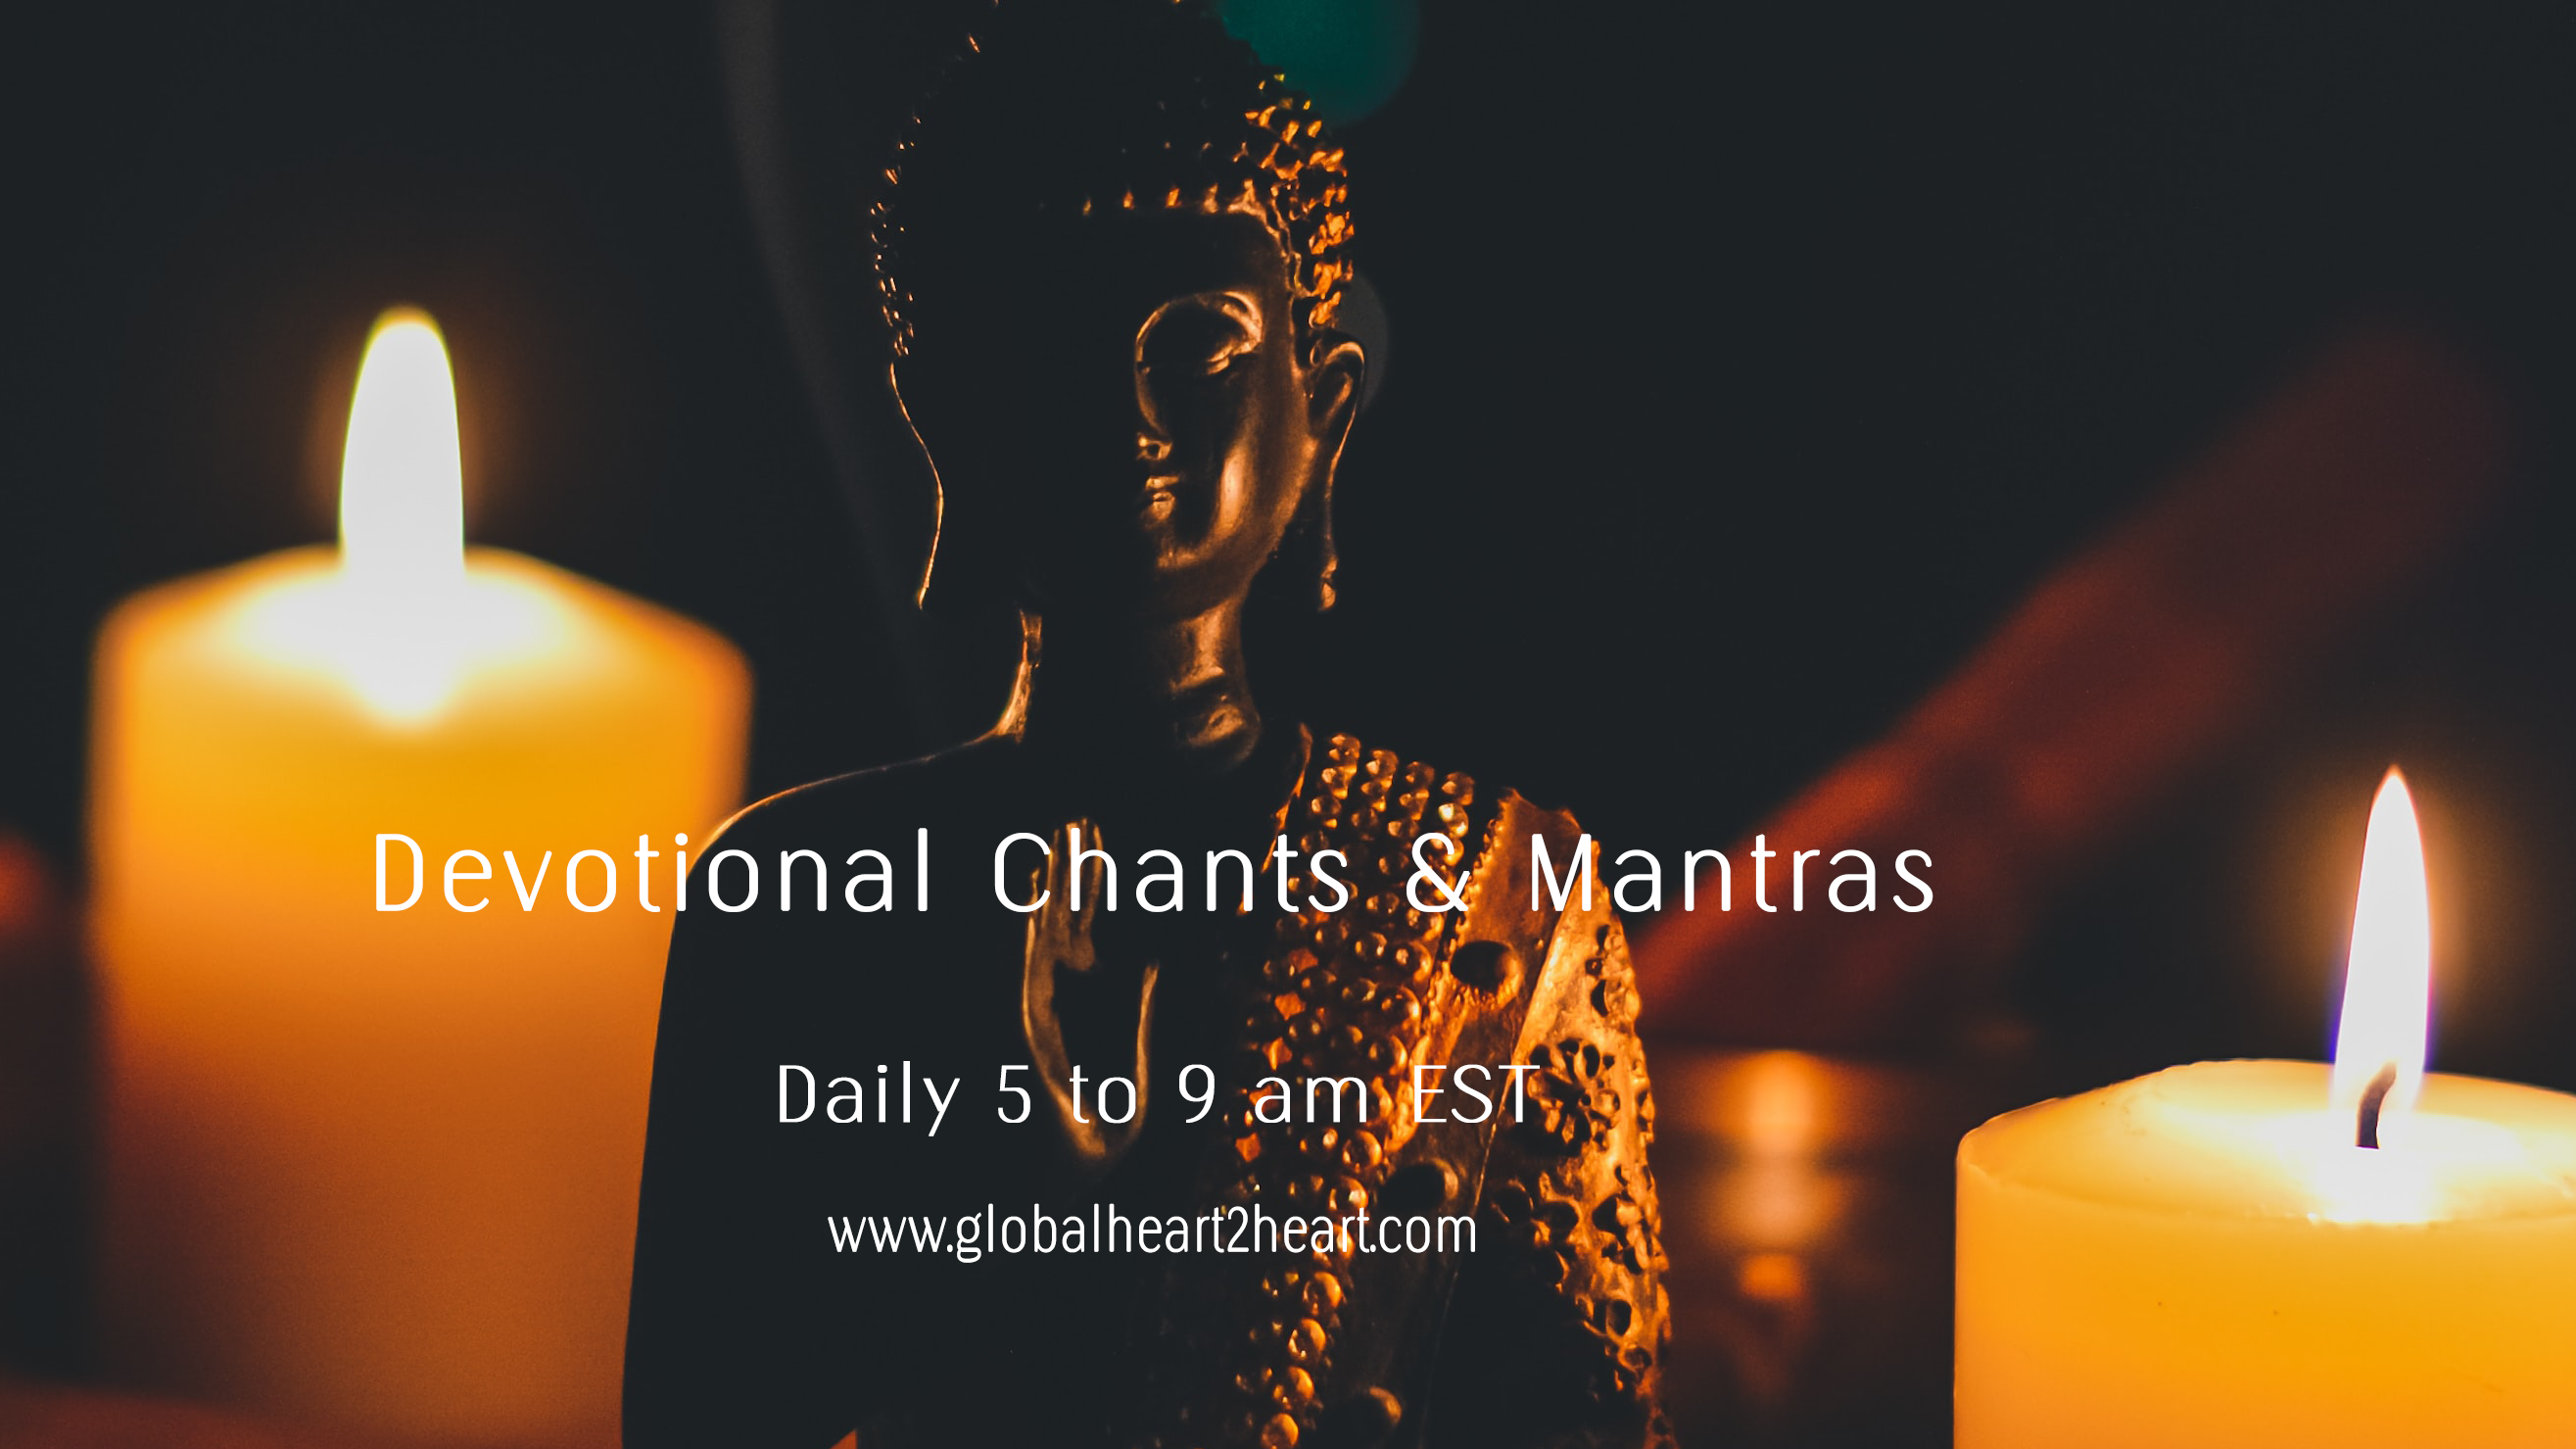 Devotional chants daily 5 to 9 am EST